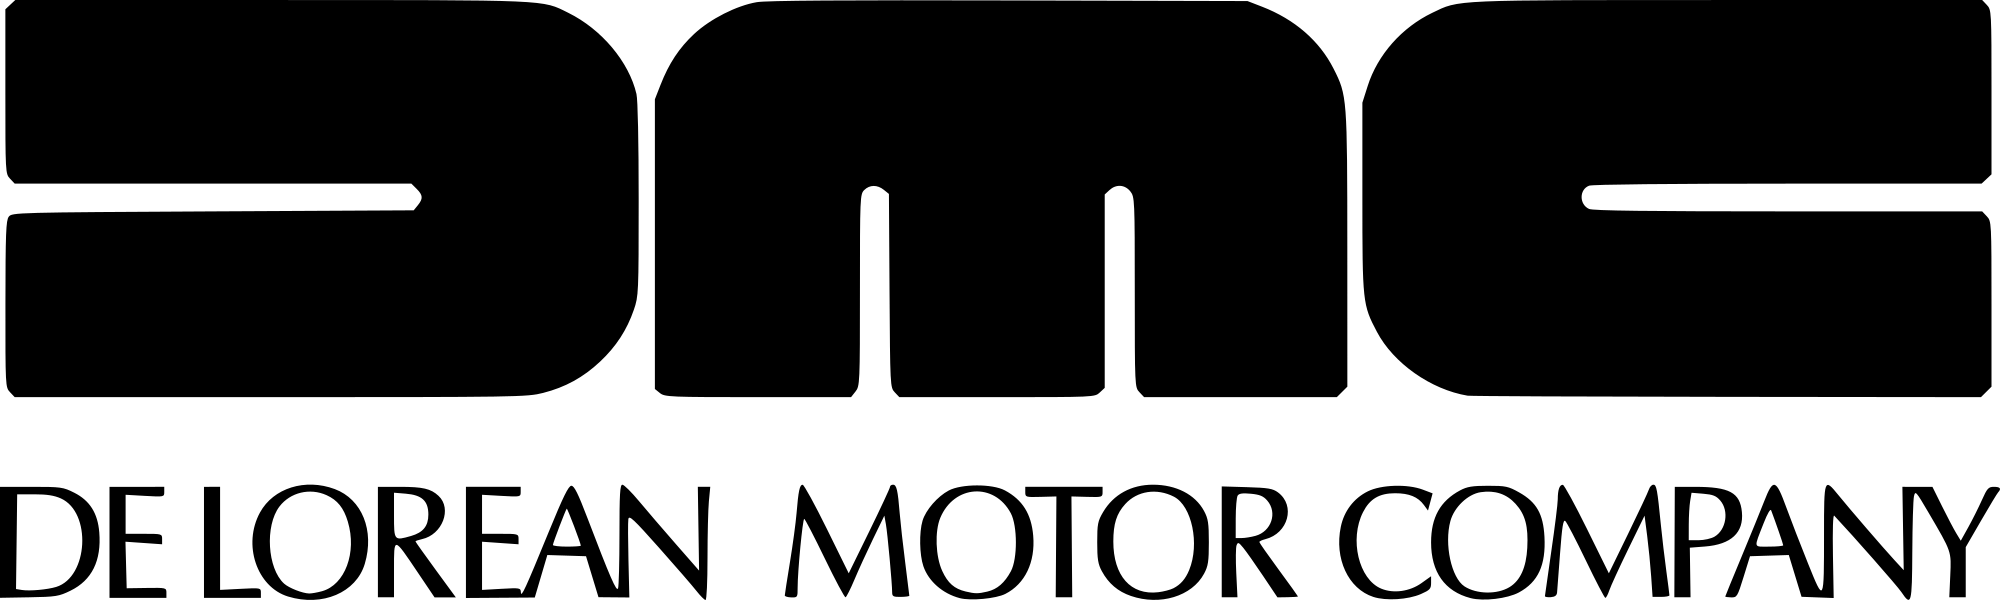 DeLorean Logo - File:DeLorean Motor Company logo.svg - Wikimedia Commons